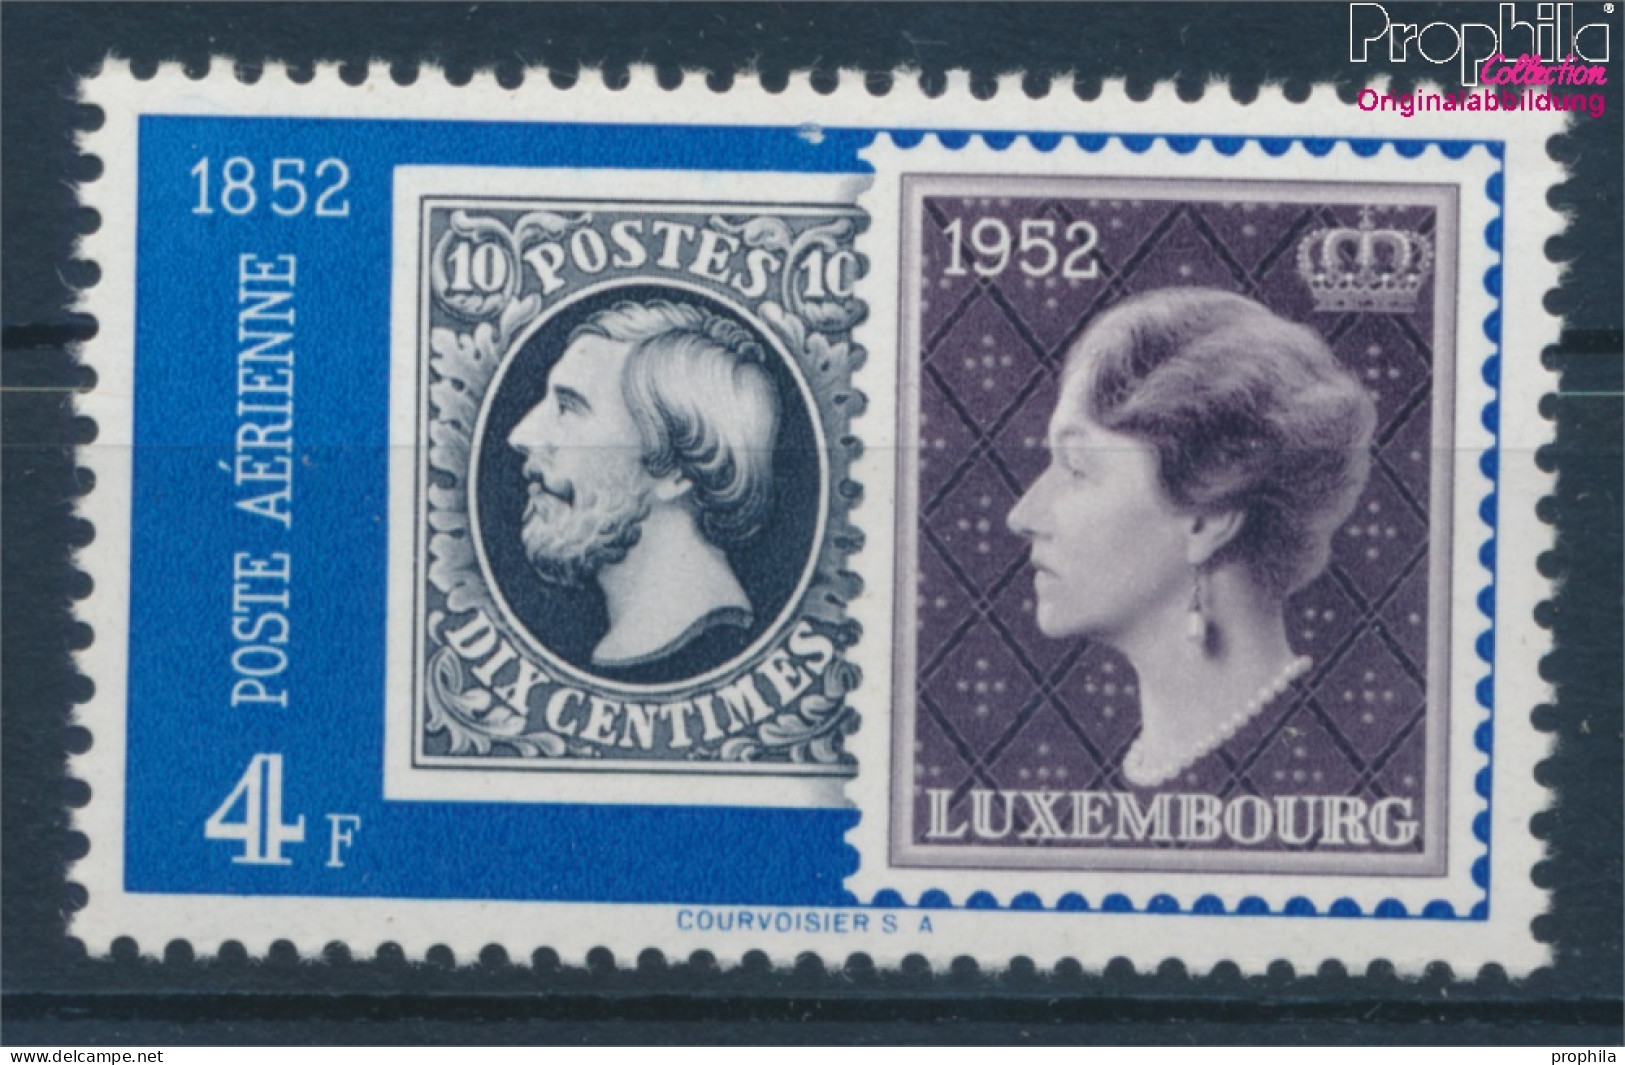 Luxemburg 492 Postfrisch 1952 Philatelie (10363181 - Unused Stamps